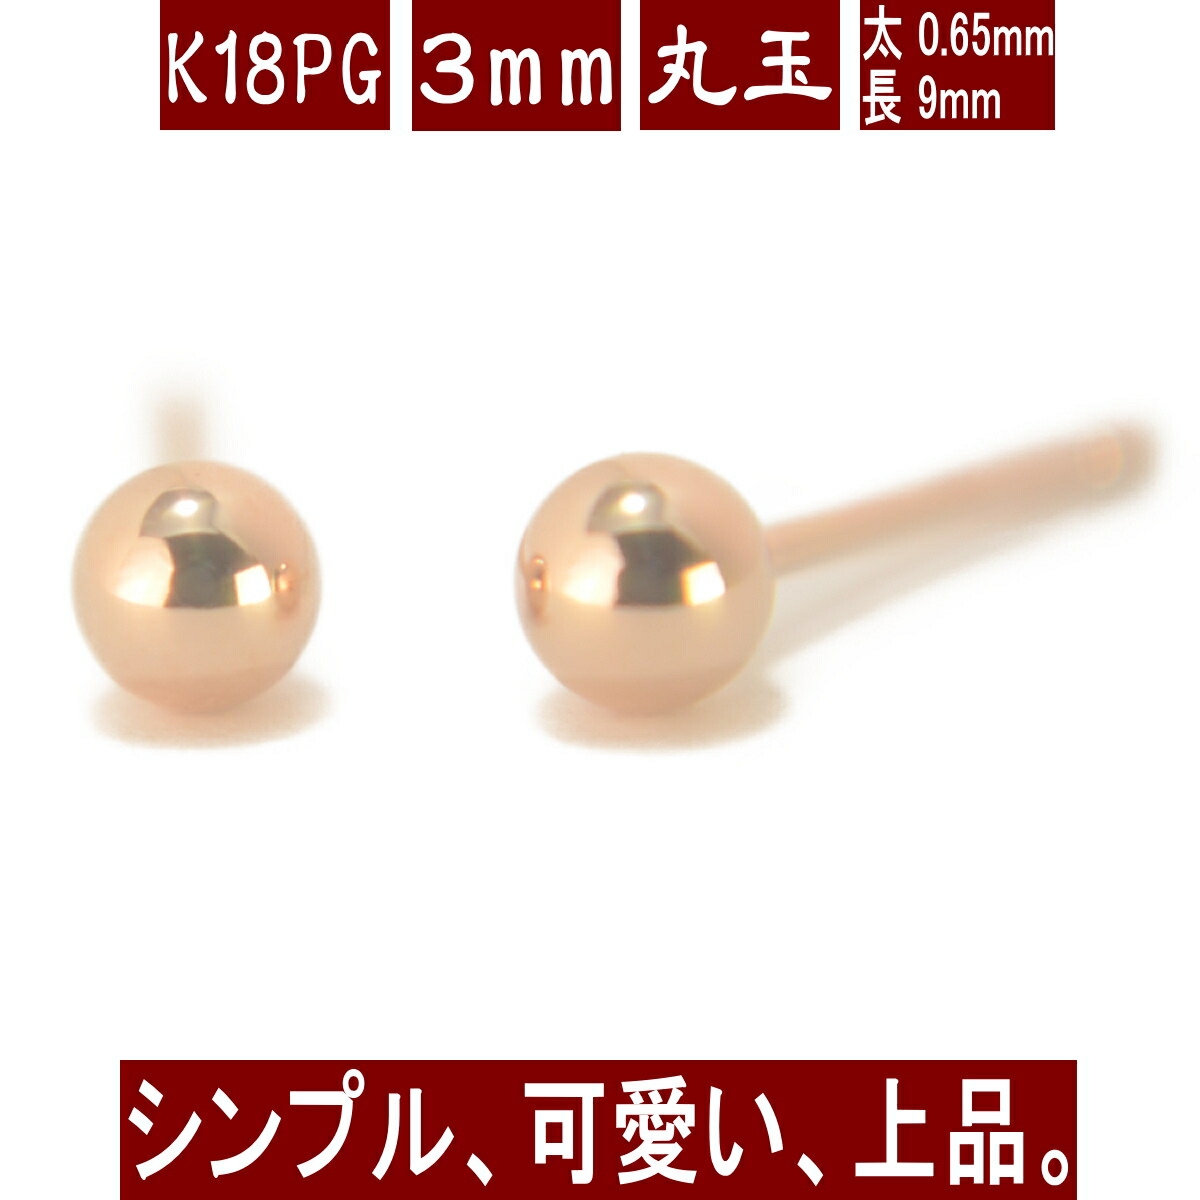 K18PGピンクゴールド丸玉ピアス 3mm ピアス 18k 18金 ピアス k18